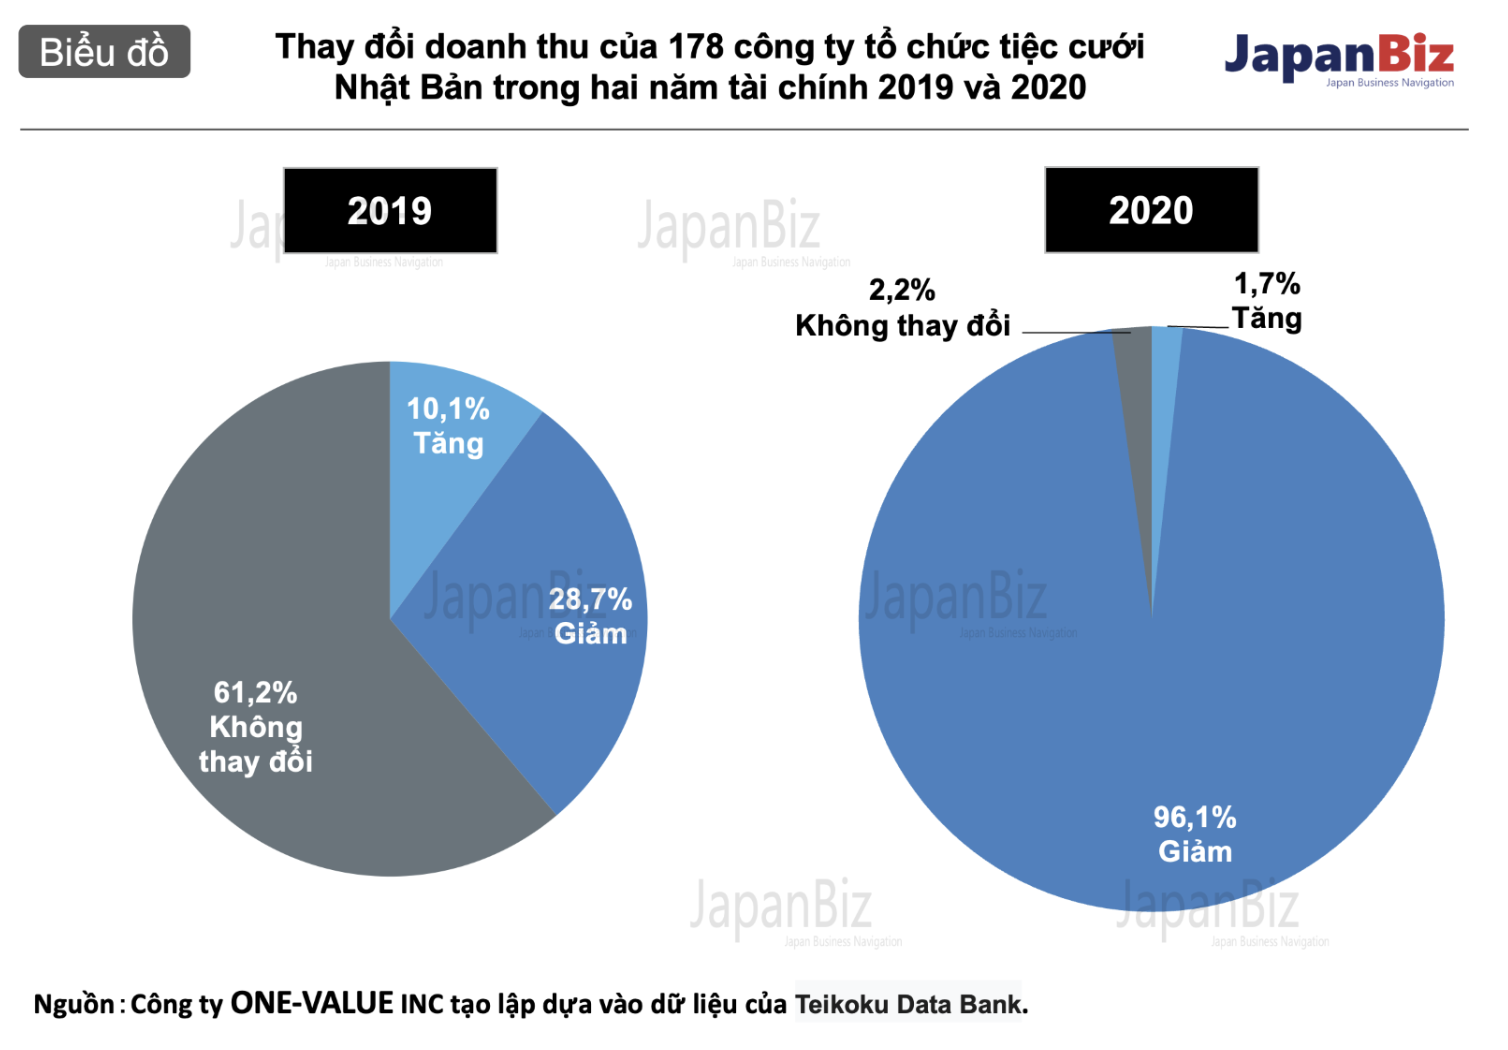 Thay đổi doanh thu của ngành cưới Nhật Bản trong hai năm tài chính 2019 và 2020